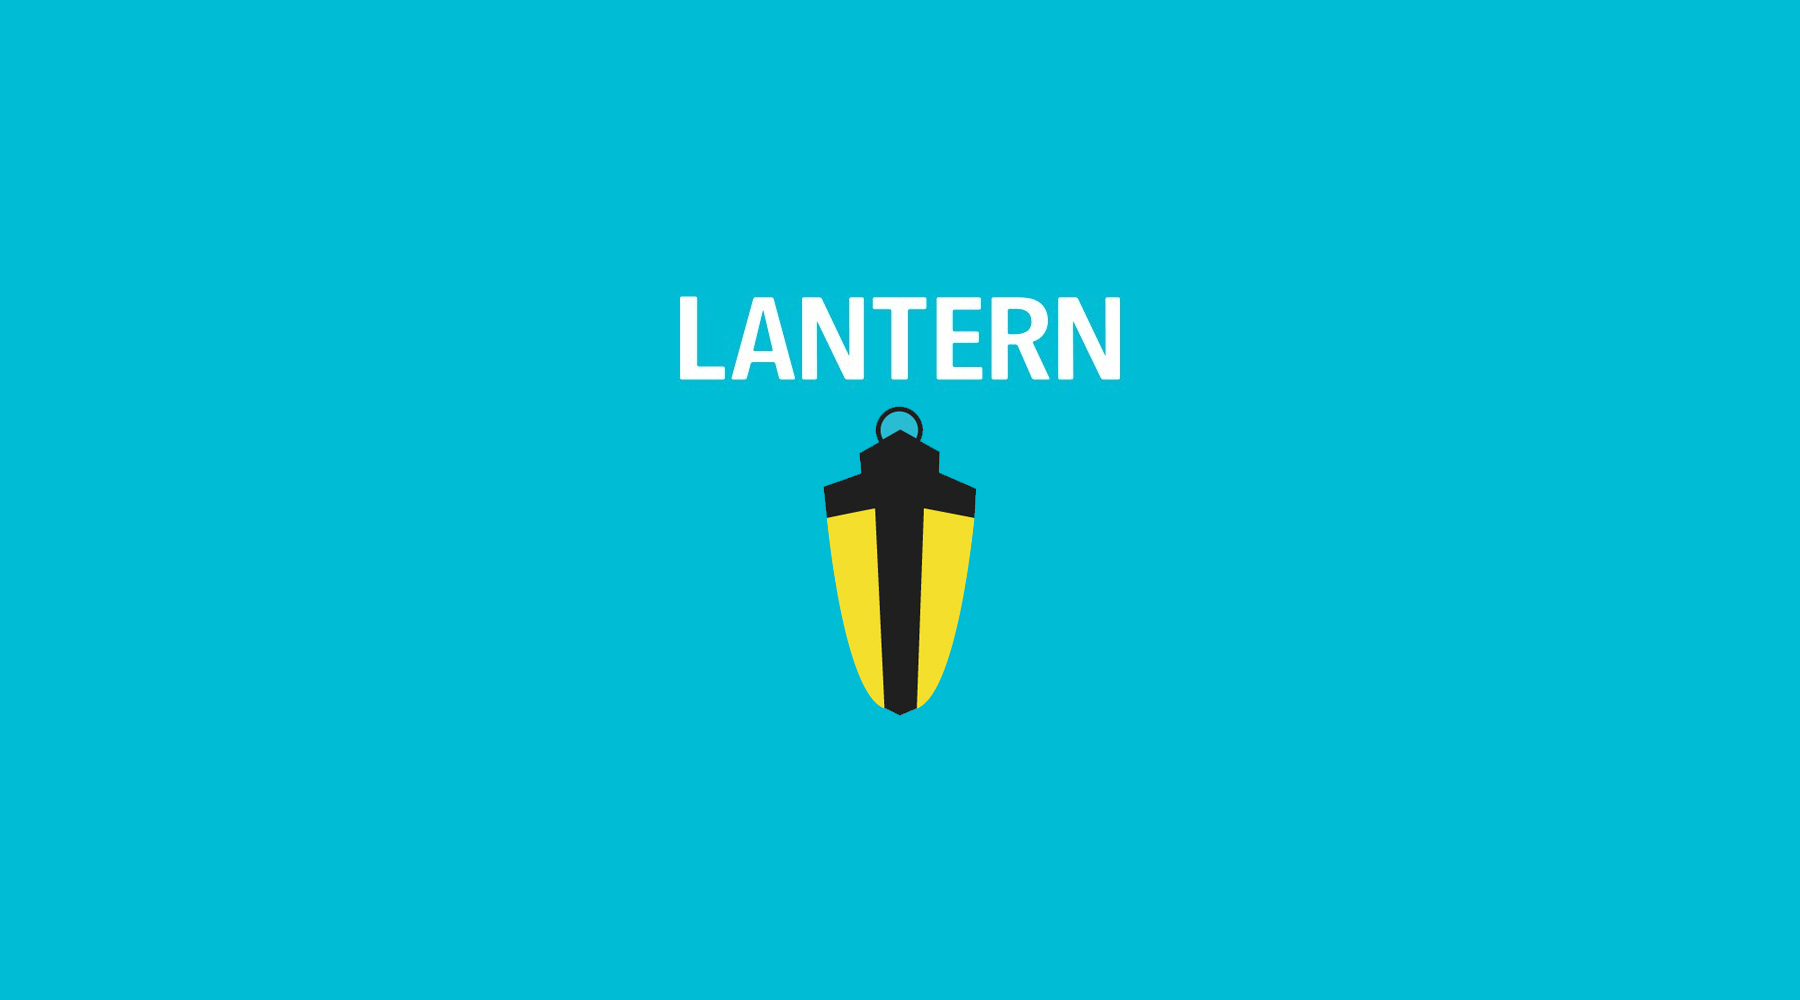 Lantern: navega por sitios bloqueados con seguridade